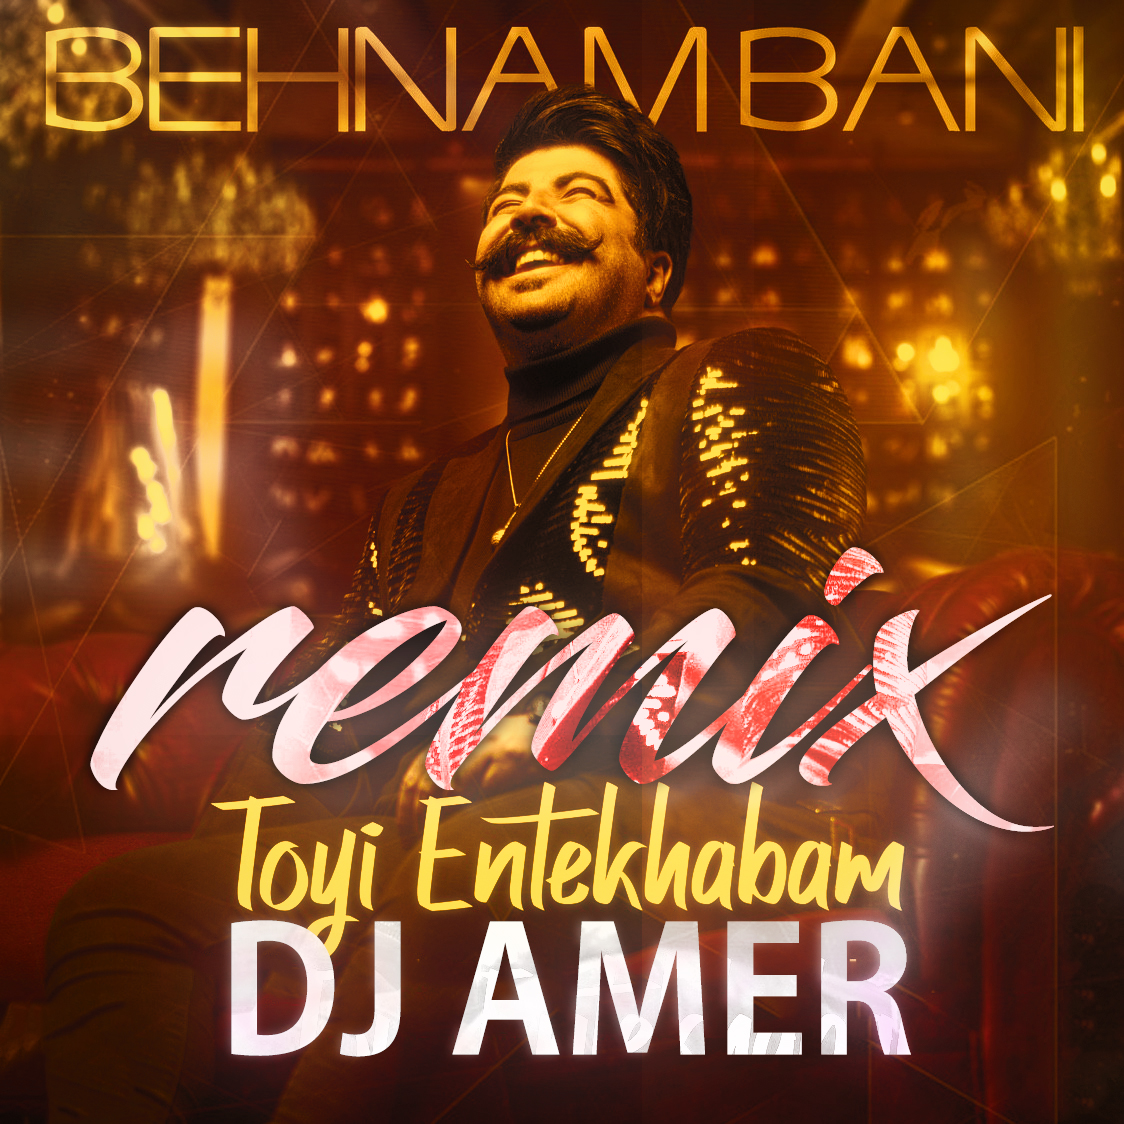  دانلود آهنگ جدید بهنام بانی - تویی انتخابم (دی جی عامر ریمیکس) | Download New Music By Dj Amer - Behnam Bani - Toyi Entekhabam (Remix)